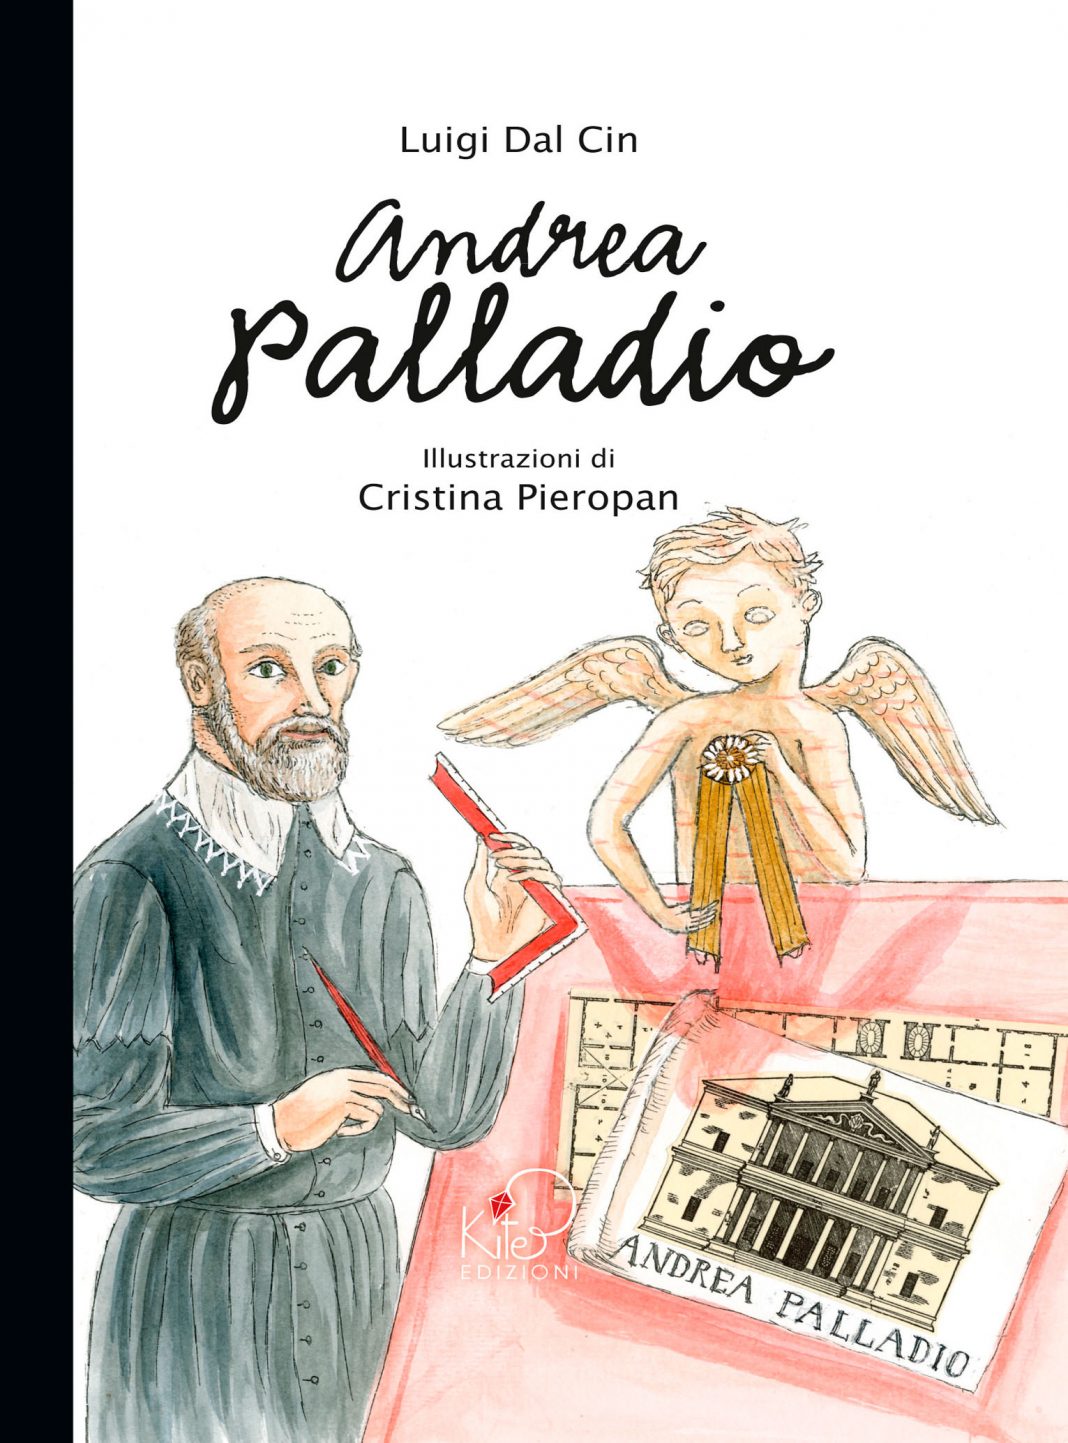 Andrea Palladio. La vita, l’arte, la storiahttps://www.exibart.com/repository/media/eventi/2012/10/andrea-palladio.-la-vita-l’arte-la-storia-1068x1443.jpg